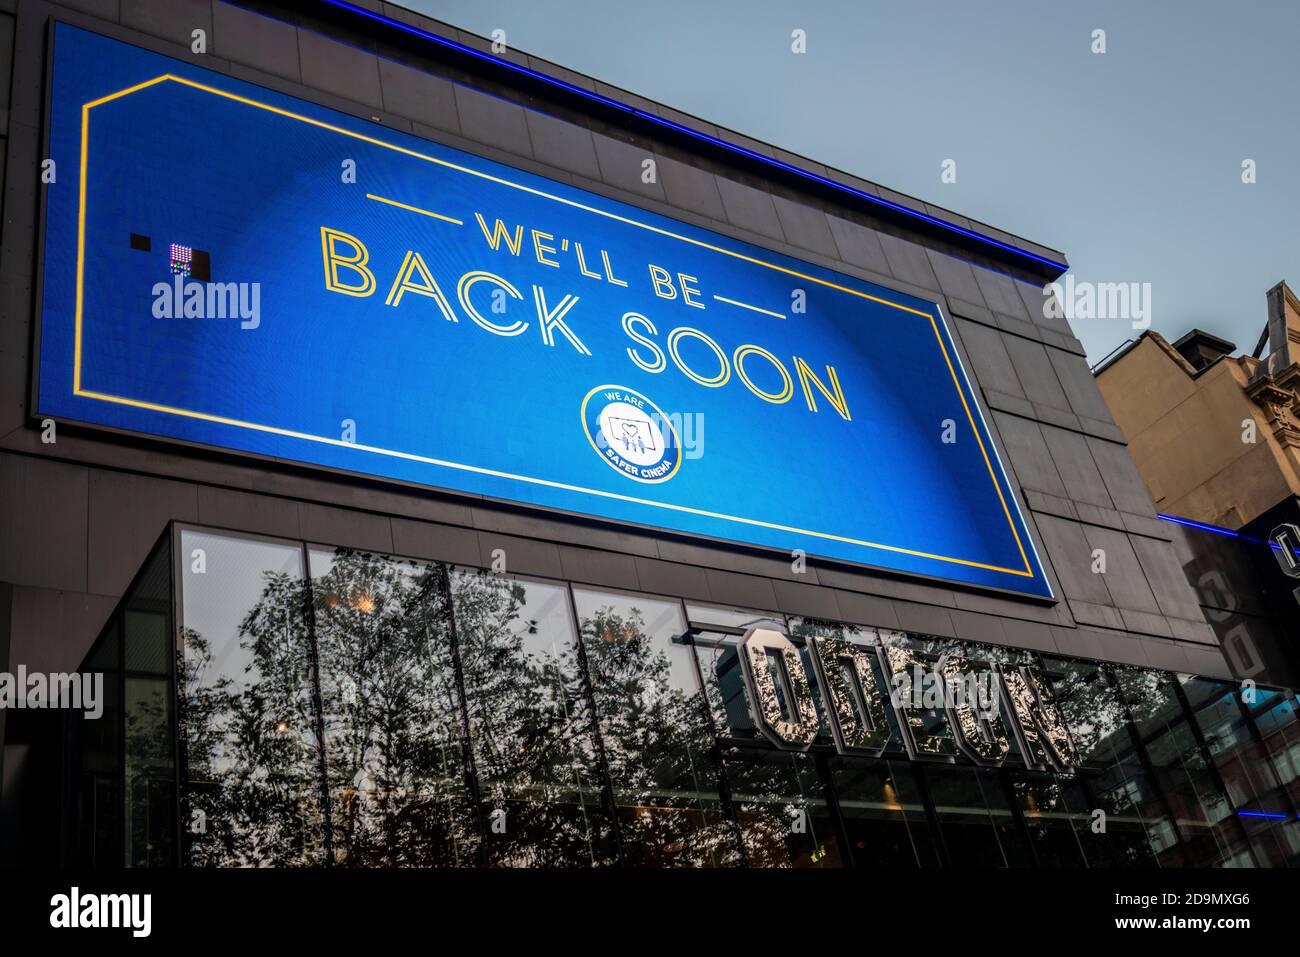 Le cinéma Odeon de Leicester Square, fermé en raison du verrouillage COVID-19, nous reviendrons bientôt. Message positif Banque D'Images